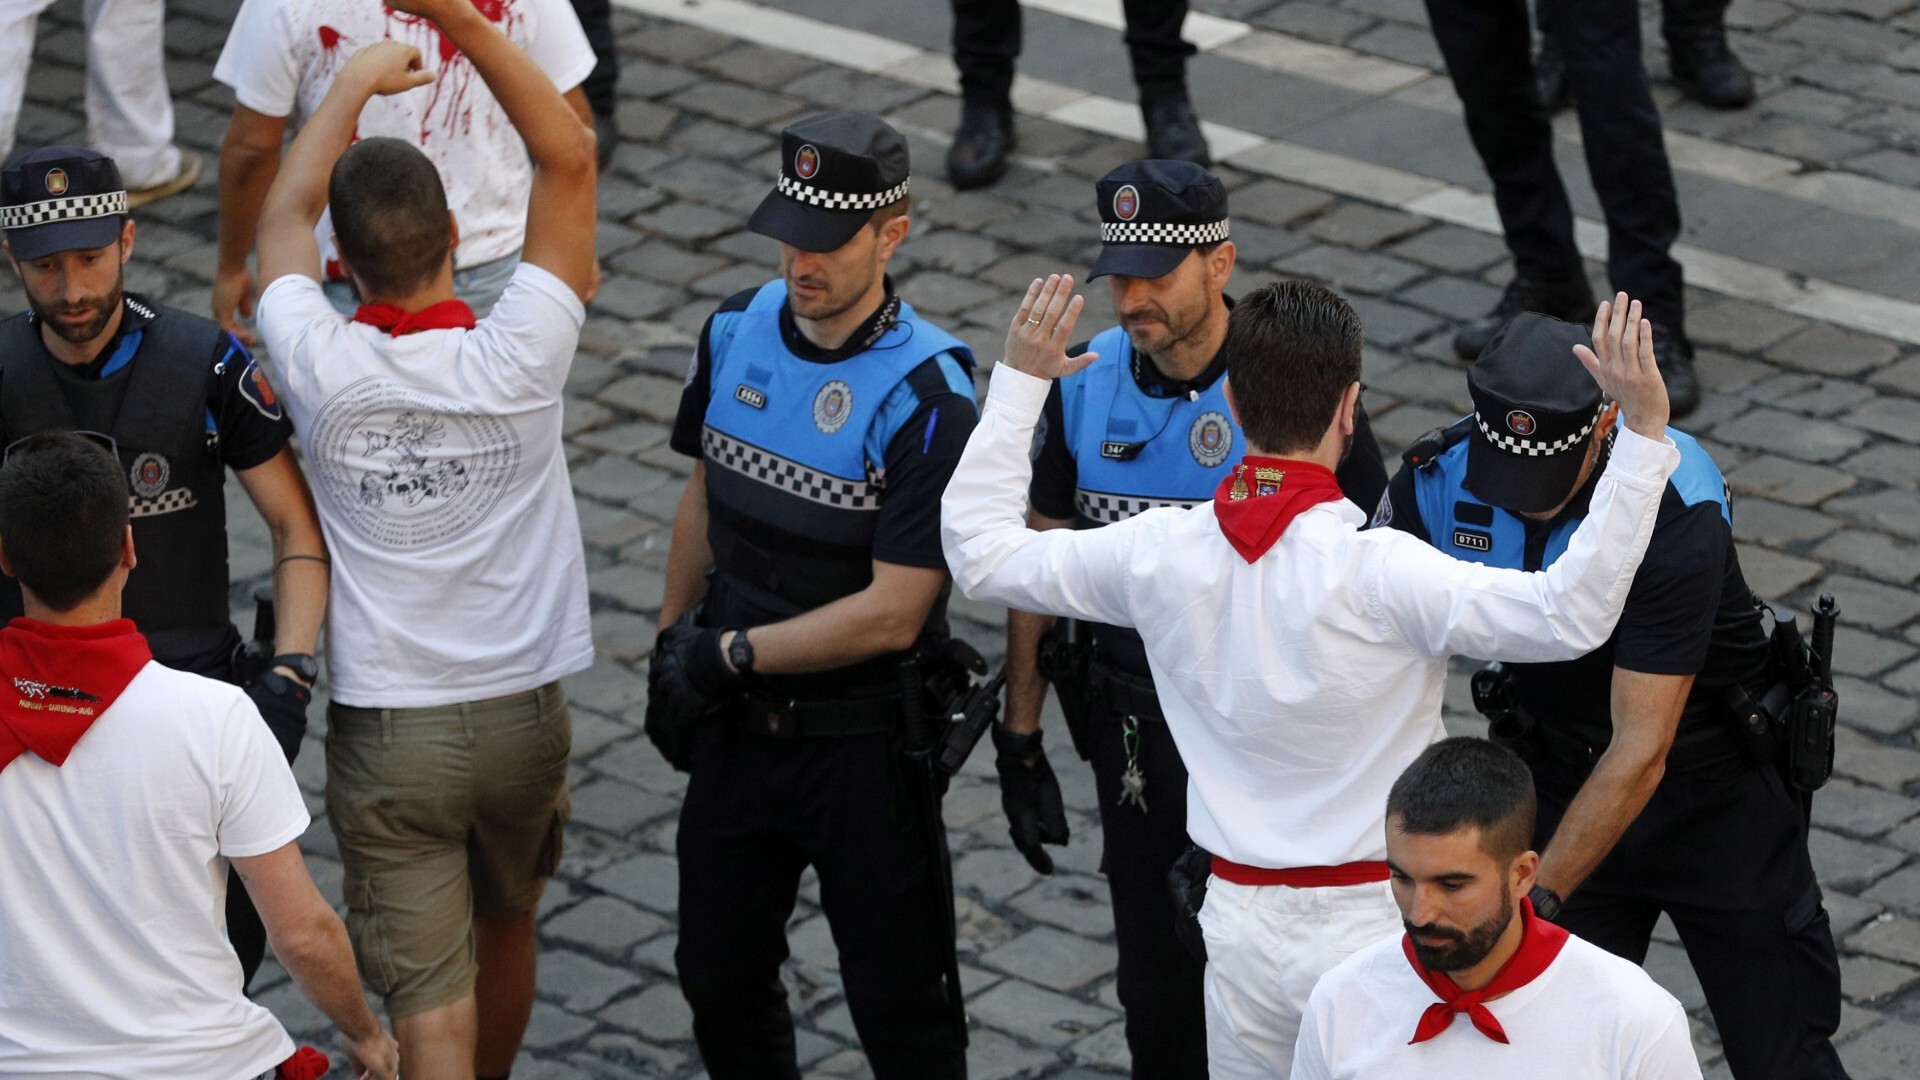 La Policía Municipal de Pamplona interviene en un partido de fútbol  infantil para calmar los ánimos